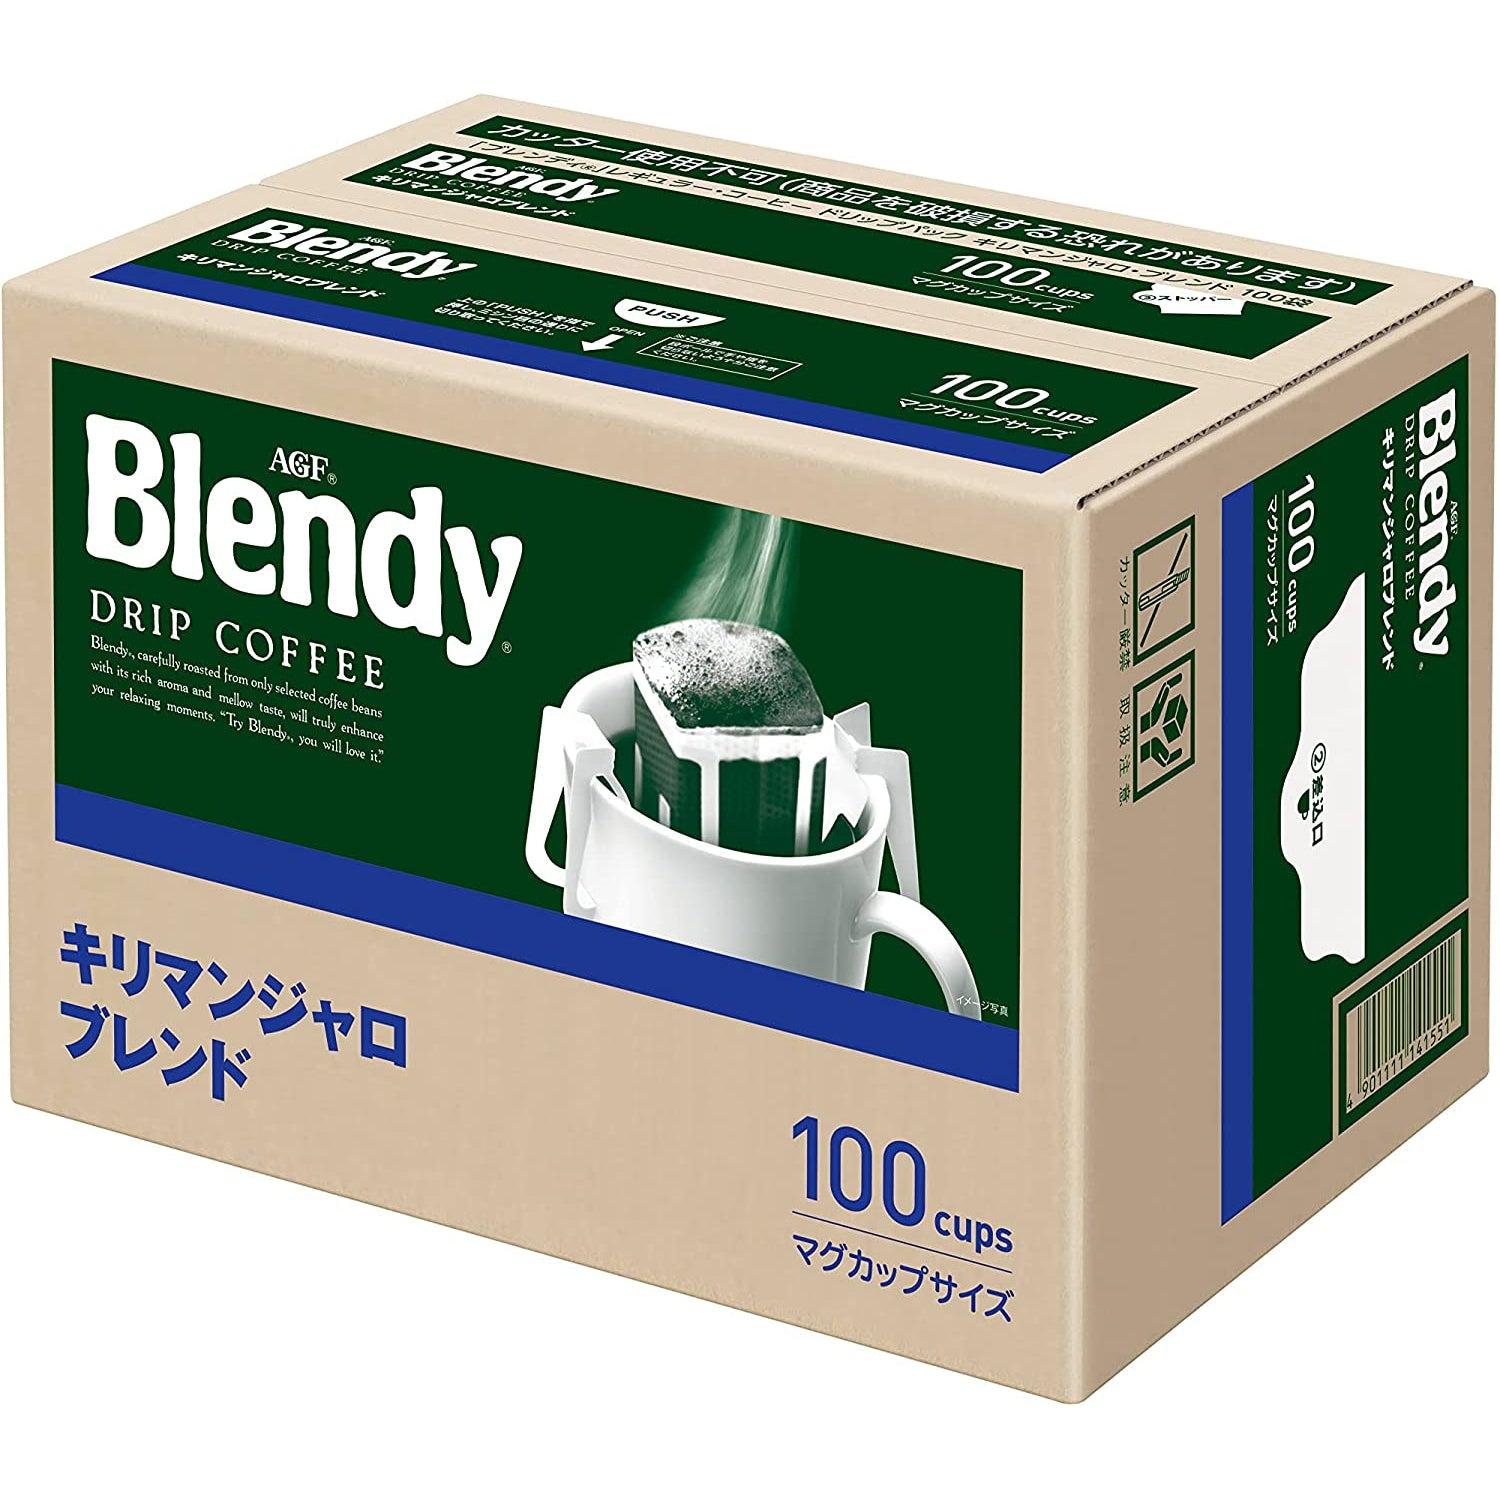 AGF Blendy Drip Coffee Kilimanjaro Blend 100 Bags, Japanese Taste